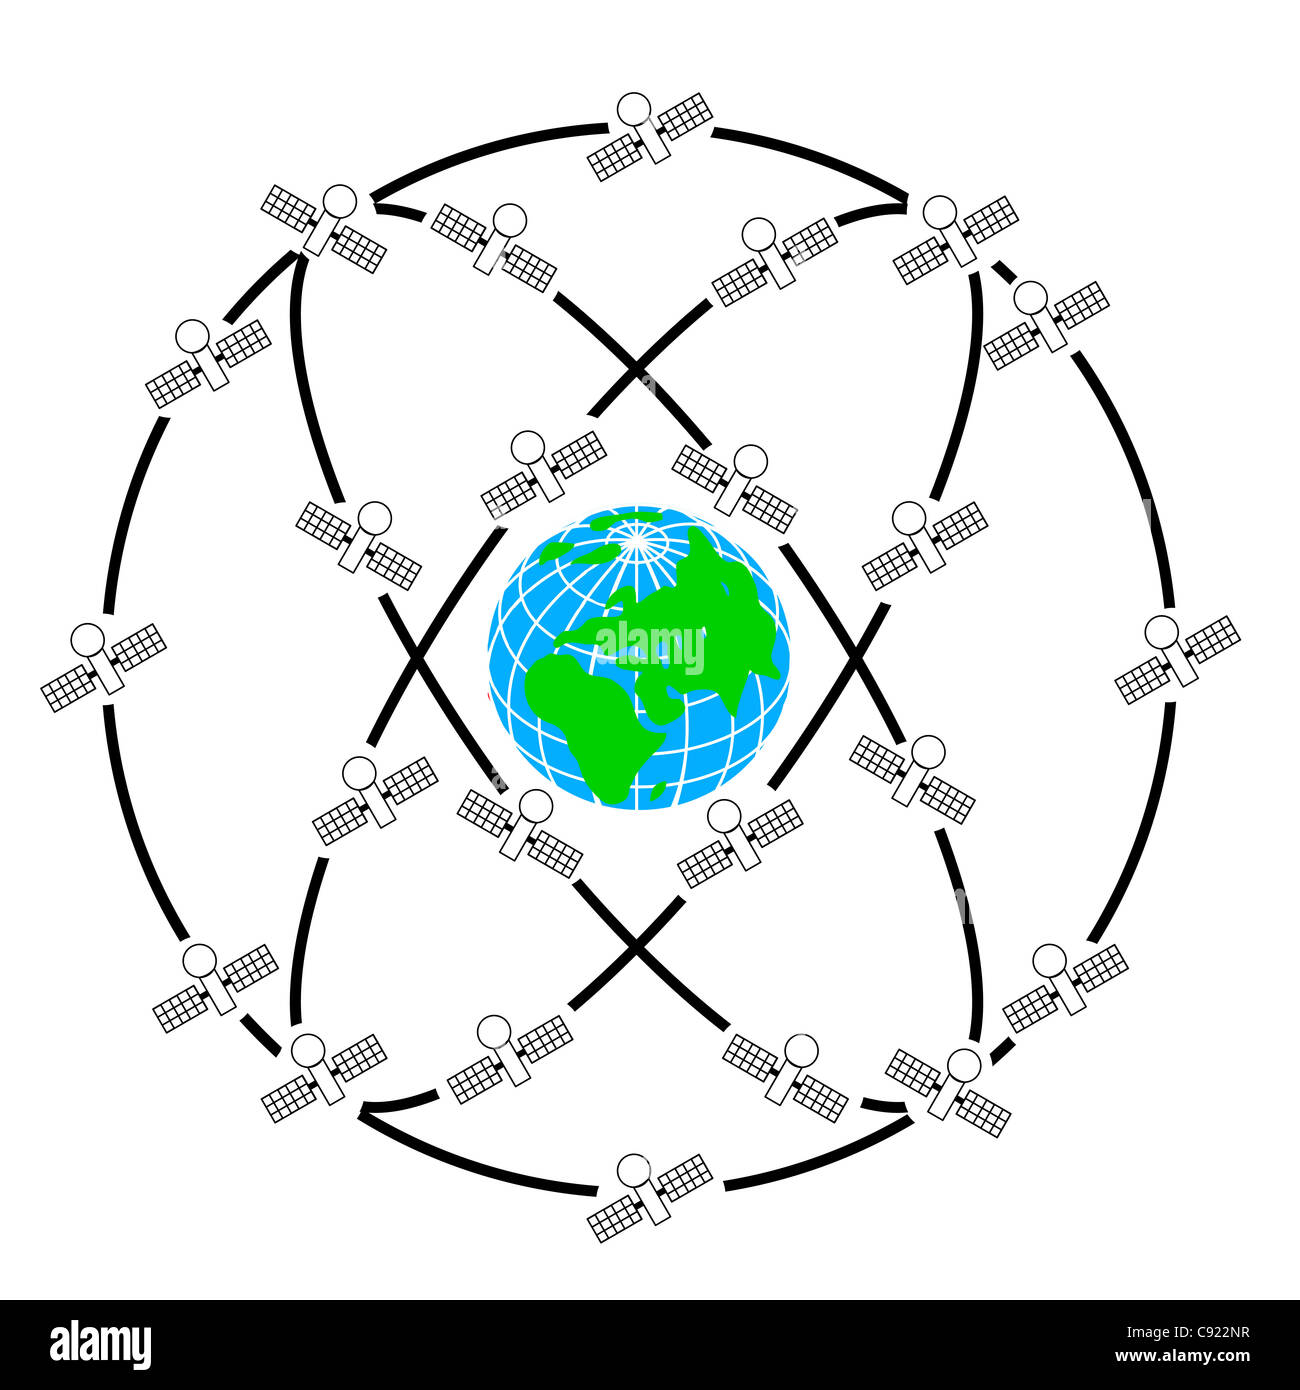 Weltraumsatelliten in exzentrischen Umlaufbahnen um die Erde. Stockfoto